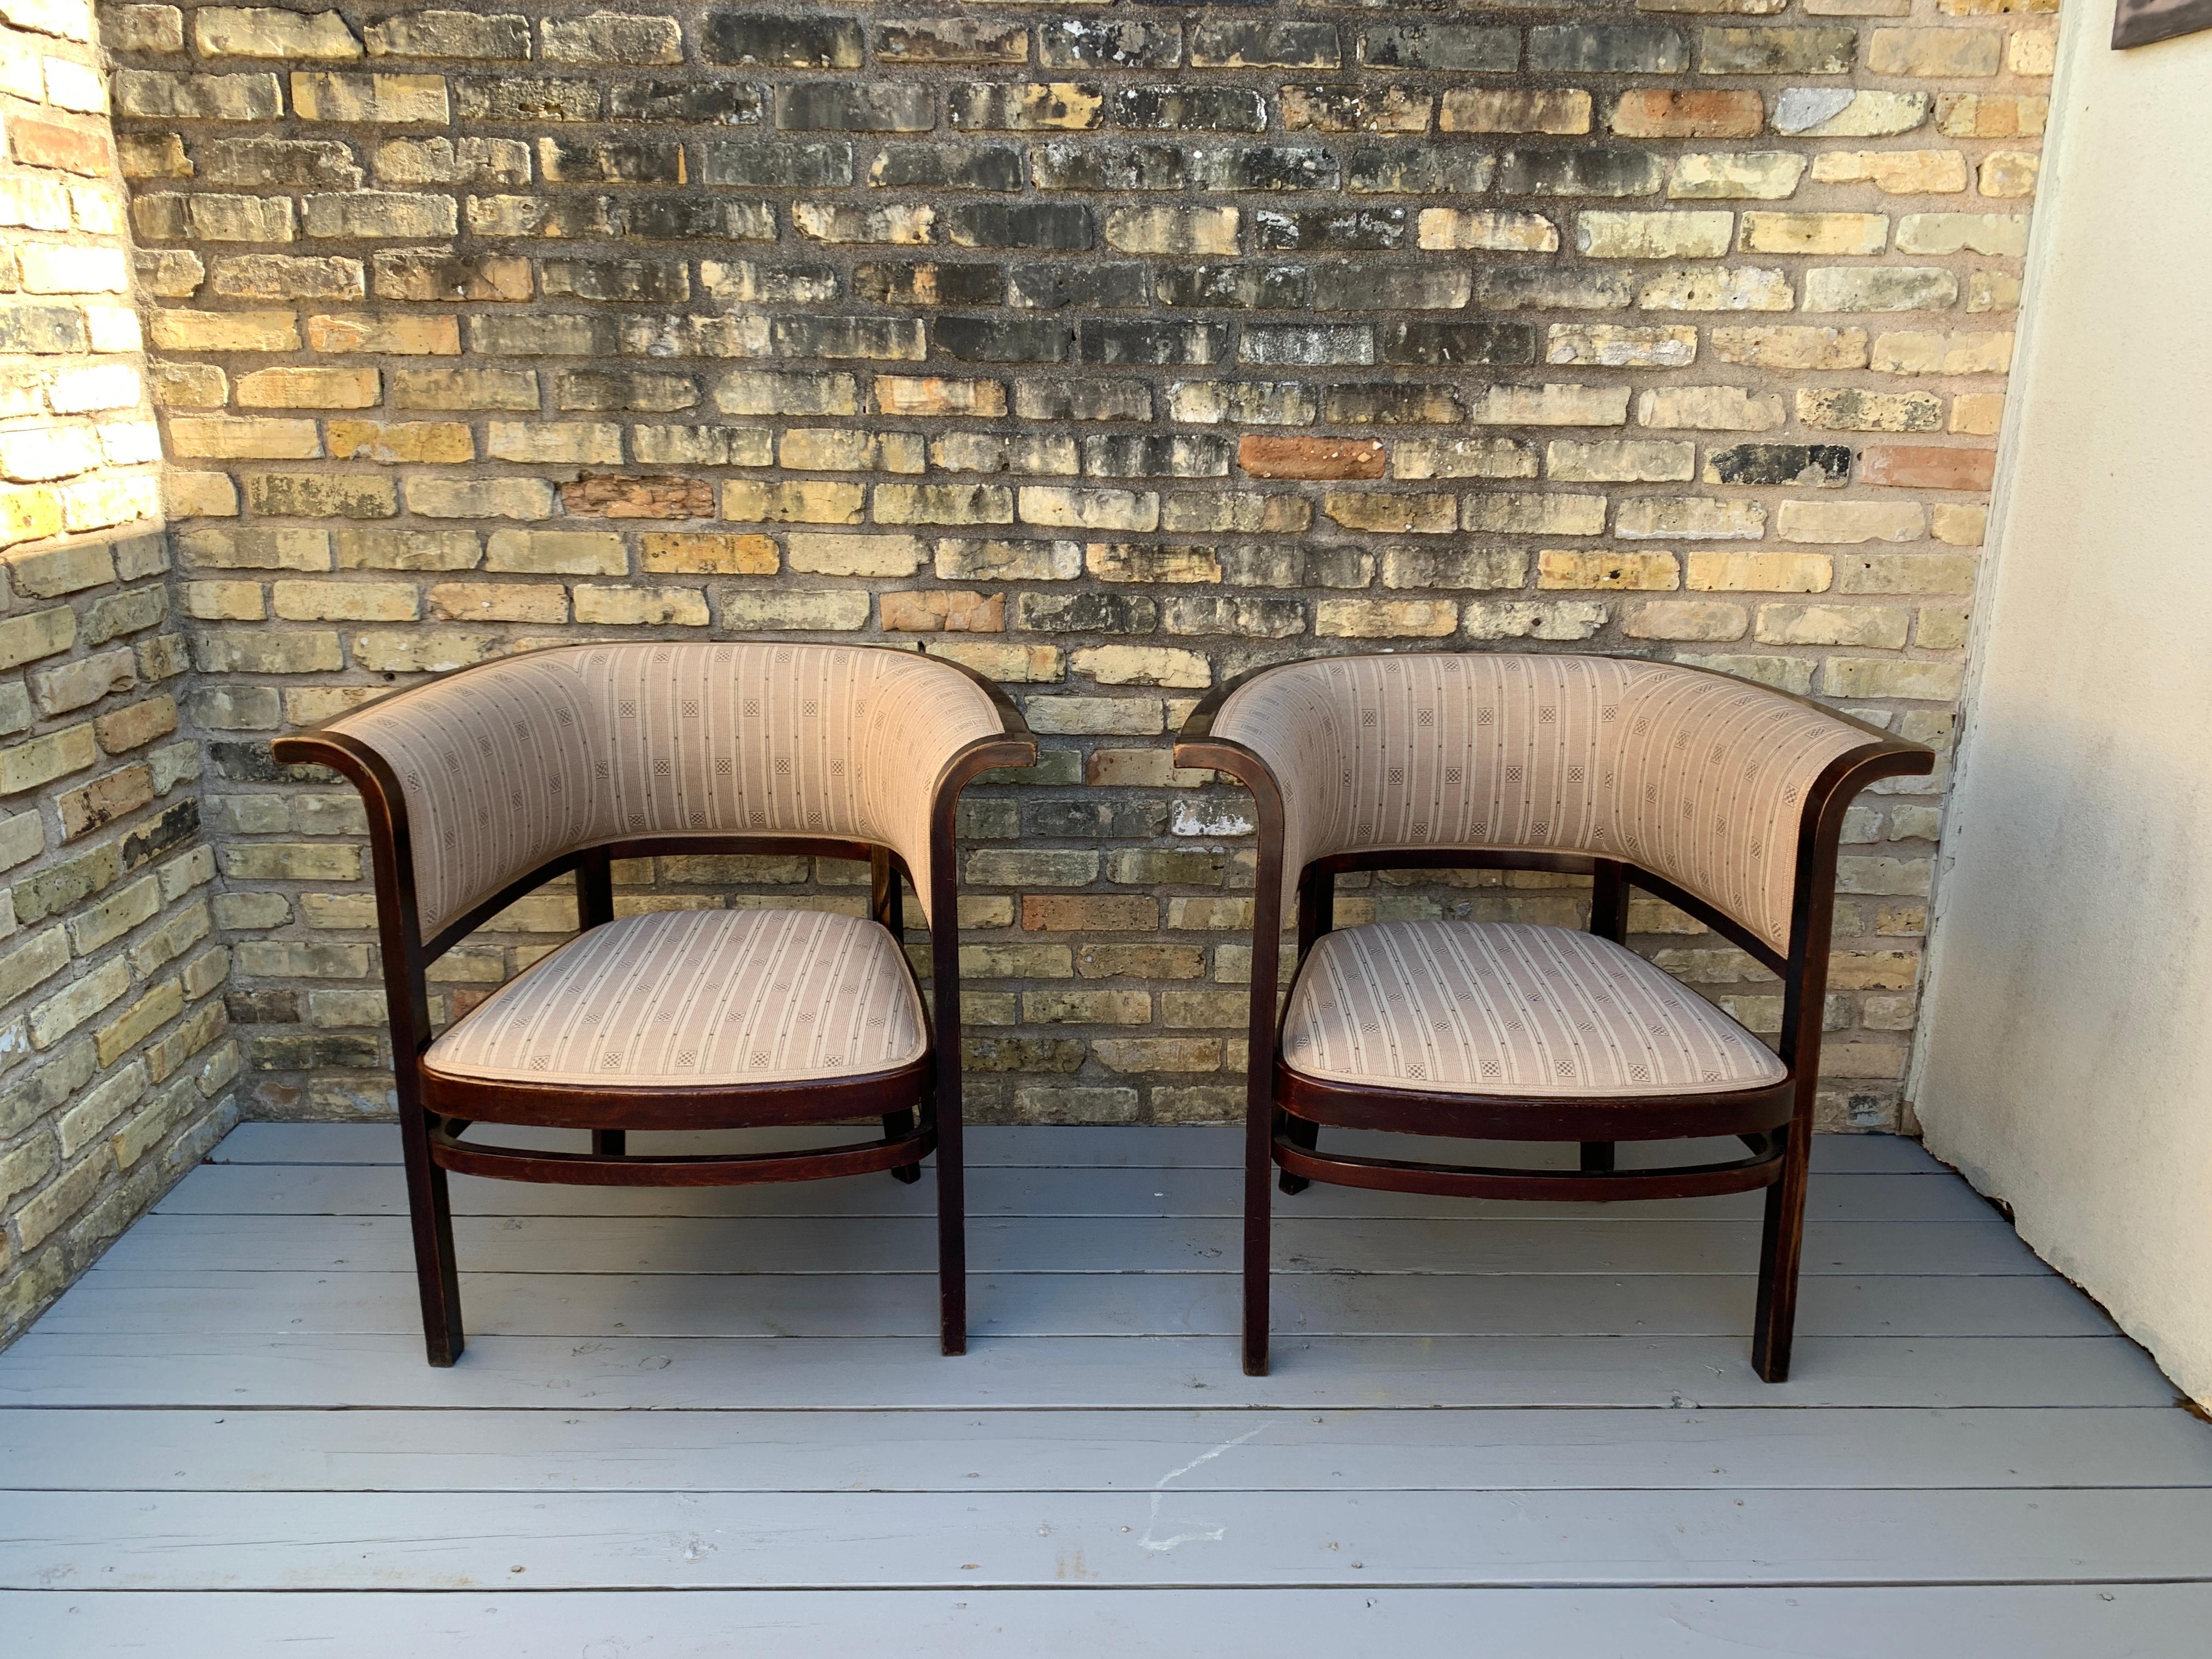 Ein wunderbares Paar Stühle der Wiener Secession aus gebeiztem und gebogenem Buchenholz, Modell Nr. 6534, entworfen von Marcel Kammerer und hergestellt von Thonet, Wien, Österreich, um 1910.

Mit schönen Linien, einem wunderbaren Sinn für